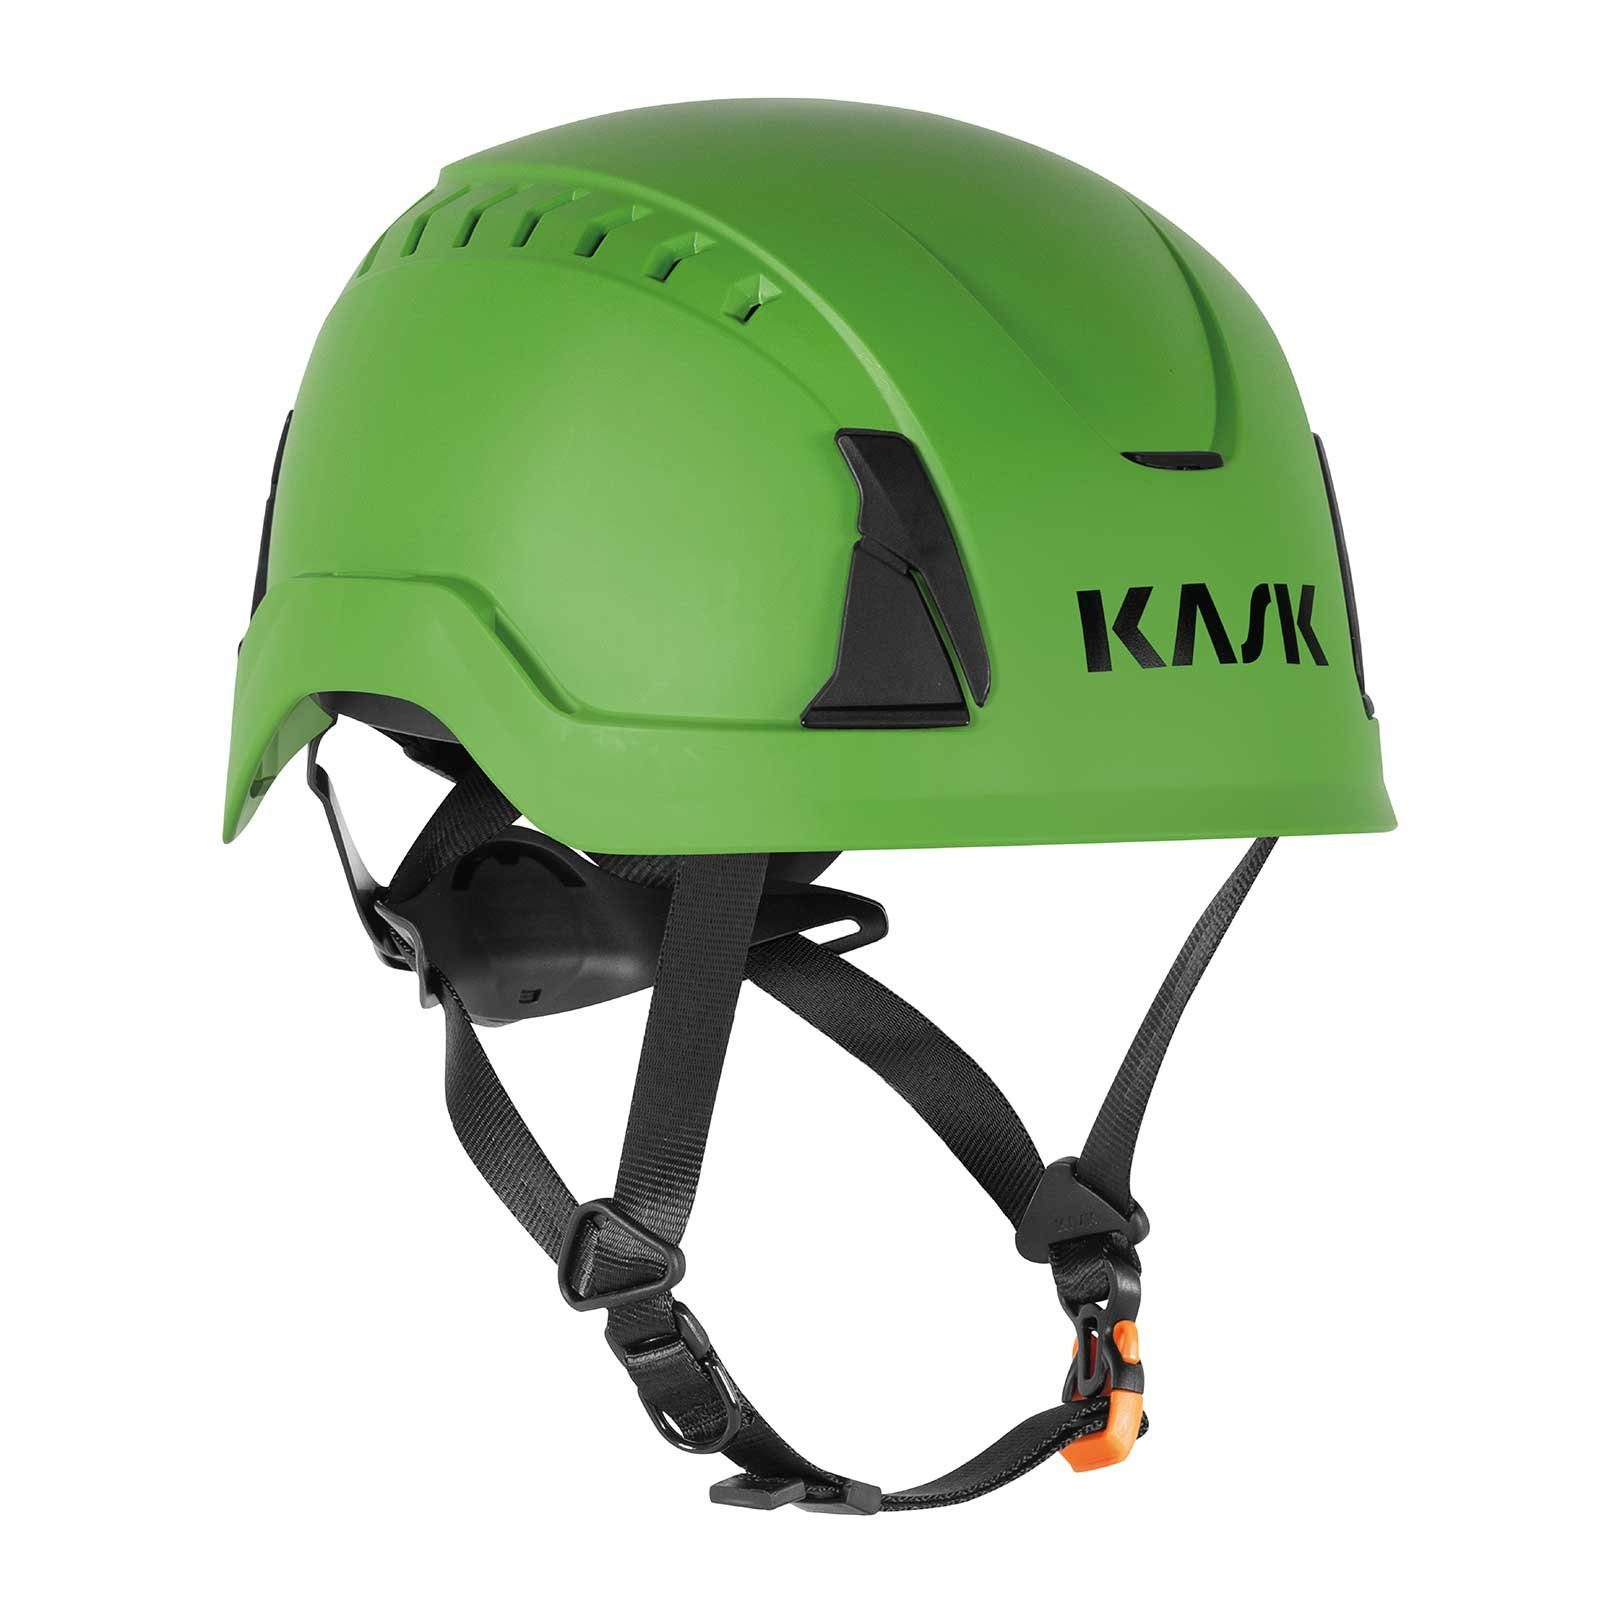 Belüftungskanäle Drehrad, Schutzhelm Air, 14 Kask Bauhelm, Primero grün Helm, Schutzhelm